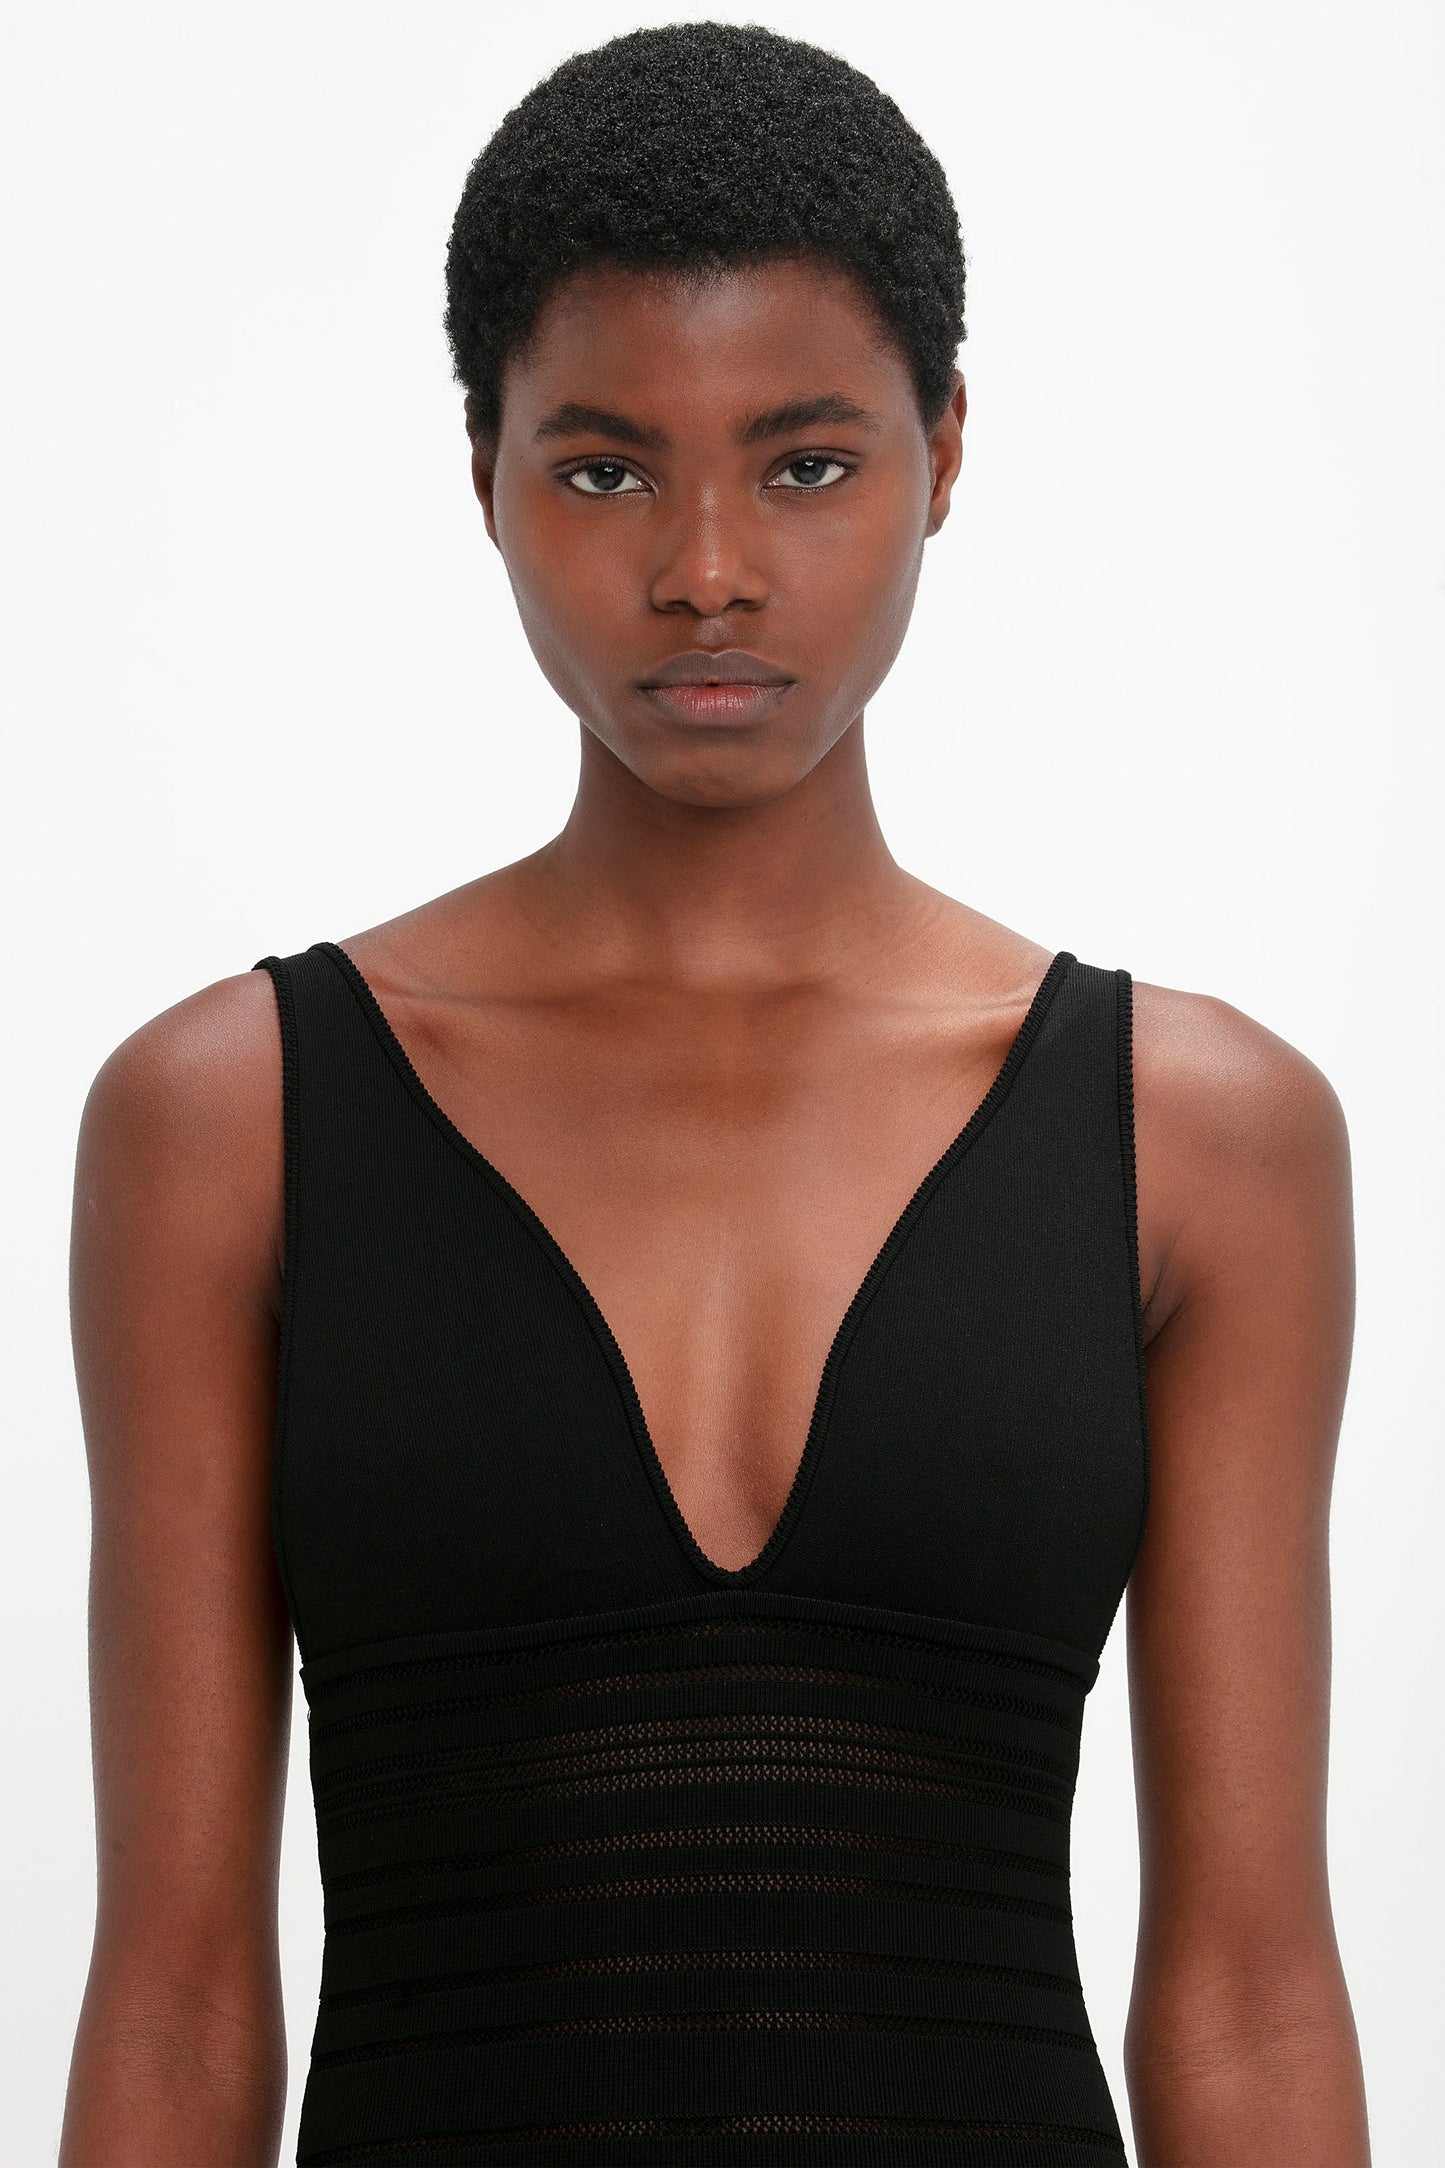 Frame Detail Sleeveless Dress In Black